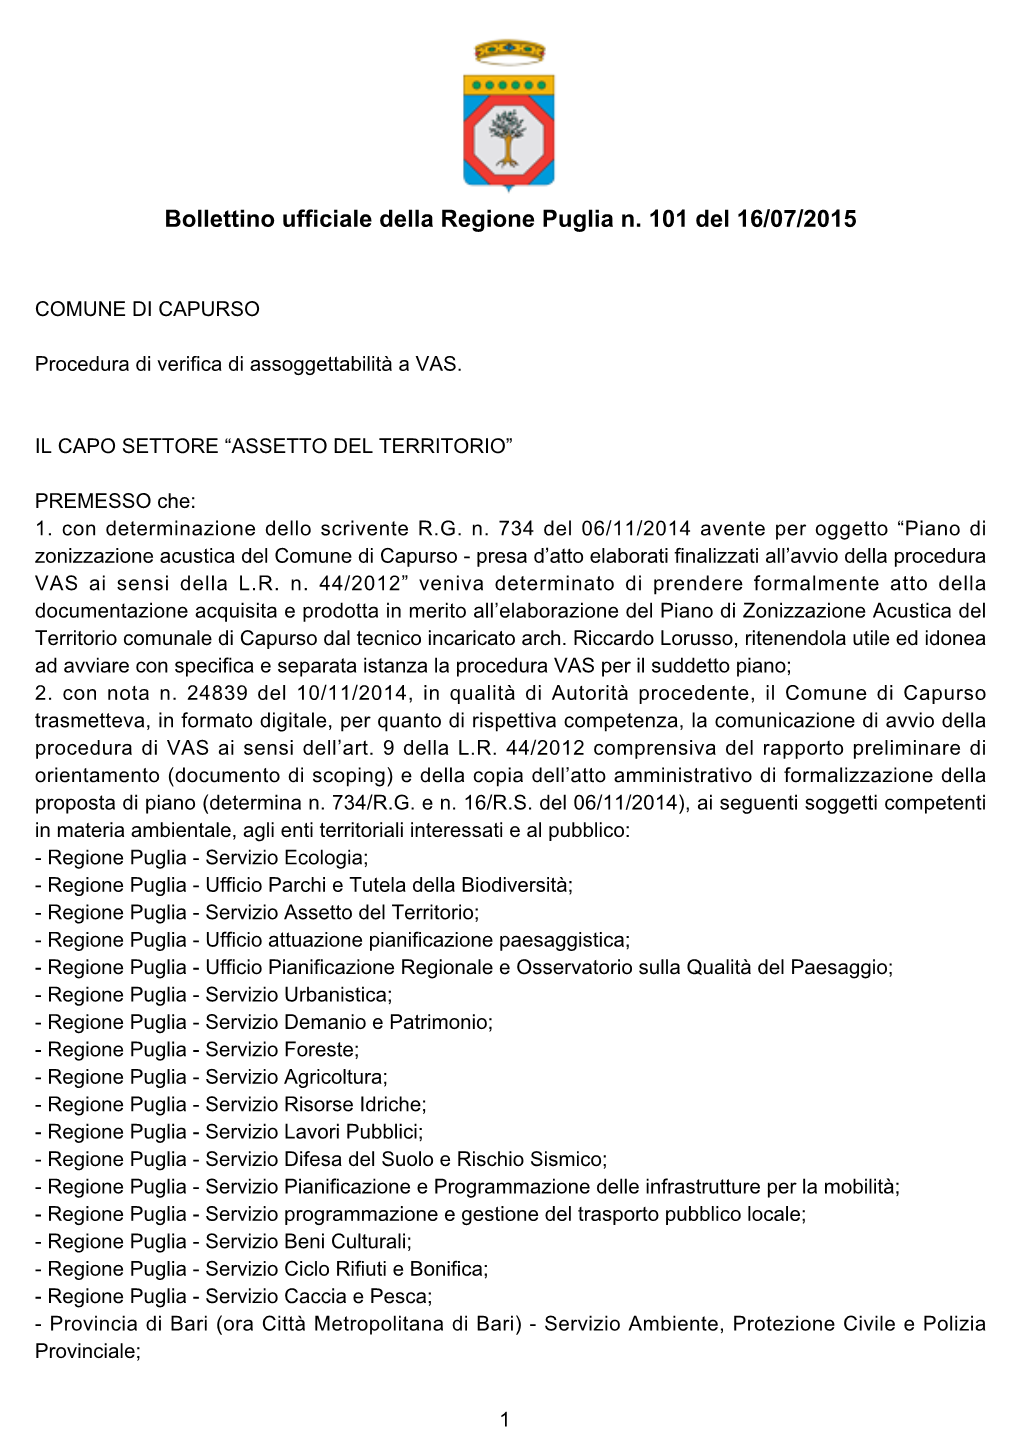 Bollettino Ufficiale Della Regione Puglia N. 101 Del 16/07/2015